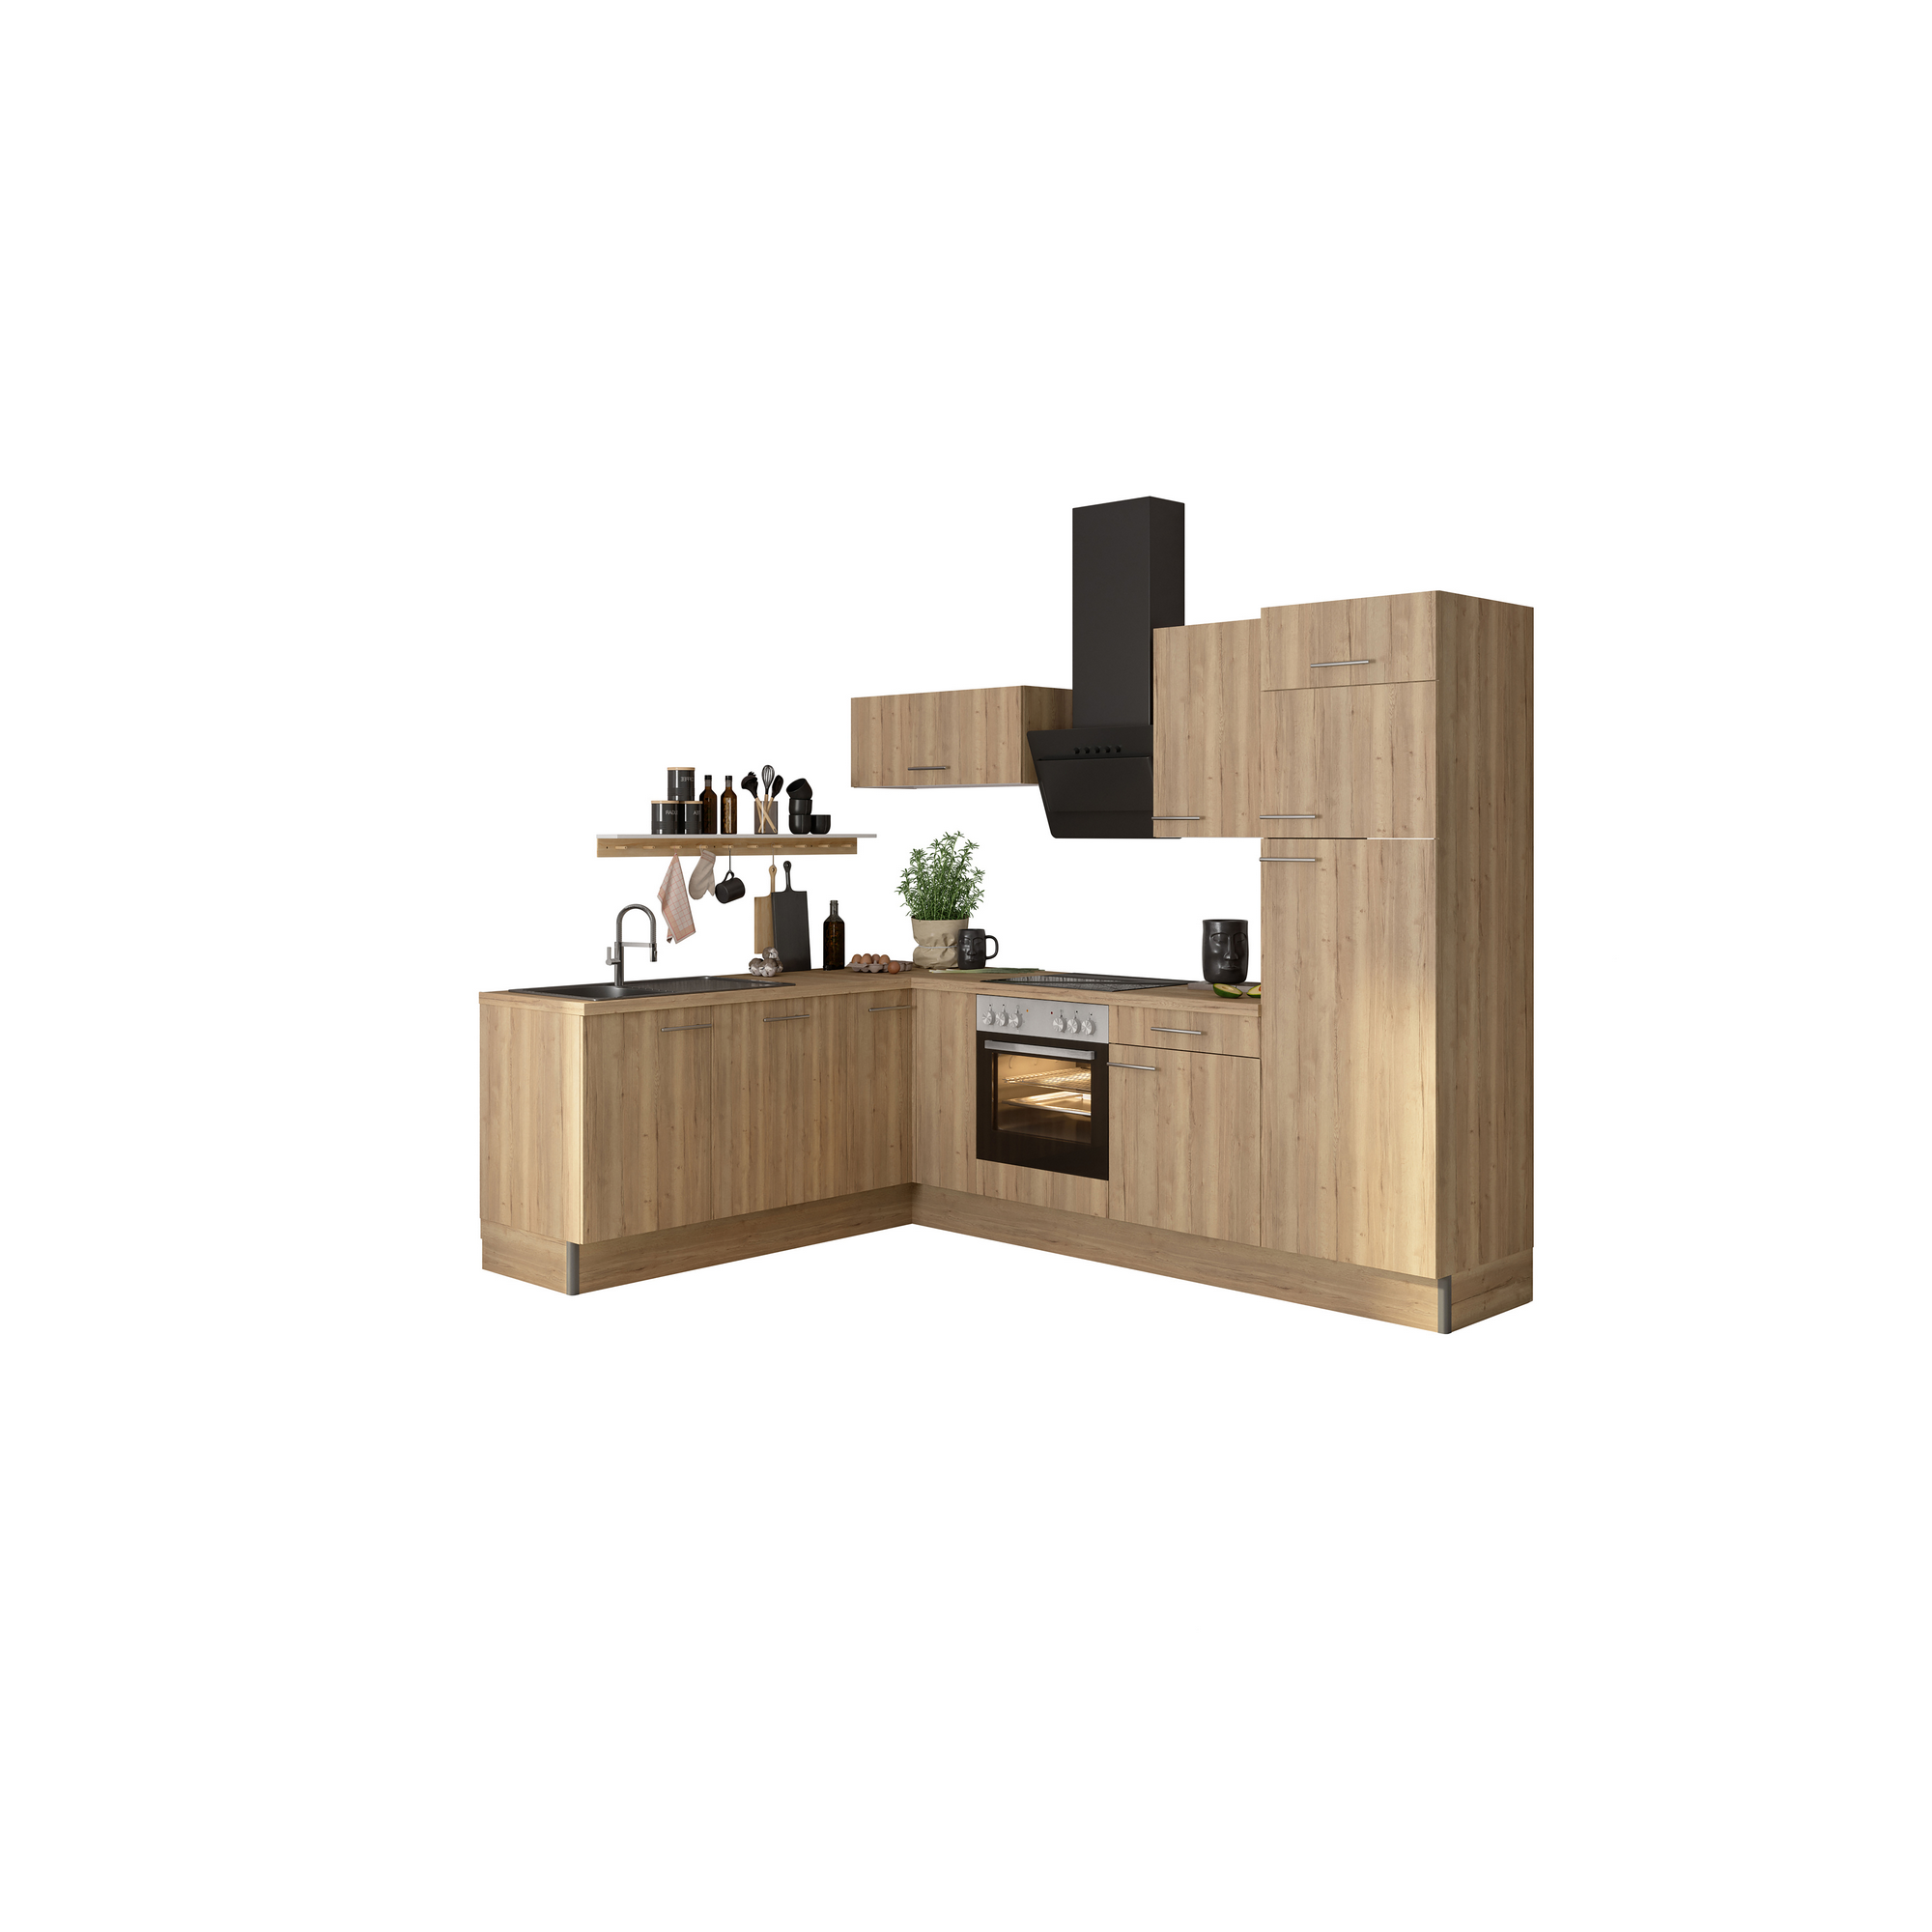 Winkelküche mit E-Geräten 'OPTIkoncept Erik290' eichefarben 270 cm + product picture